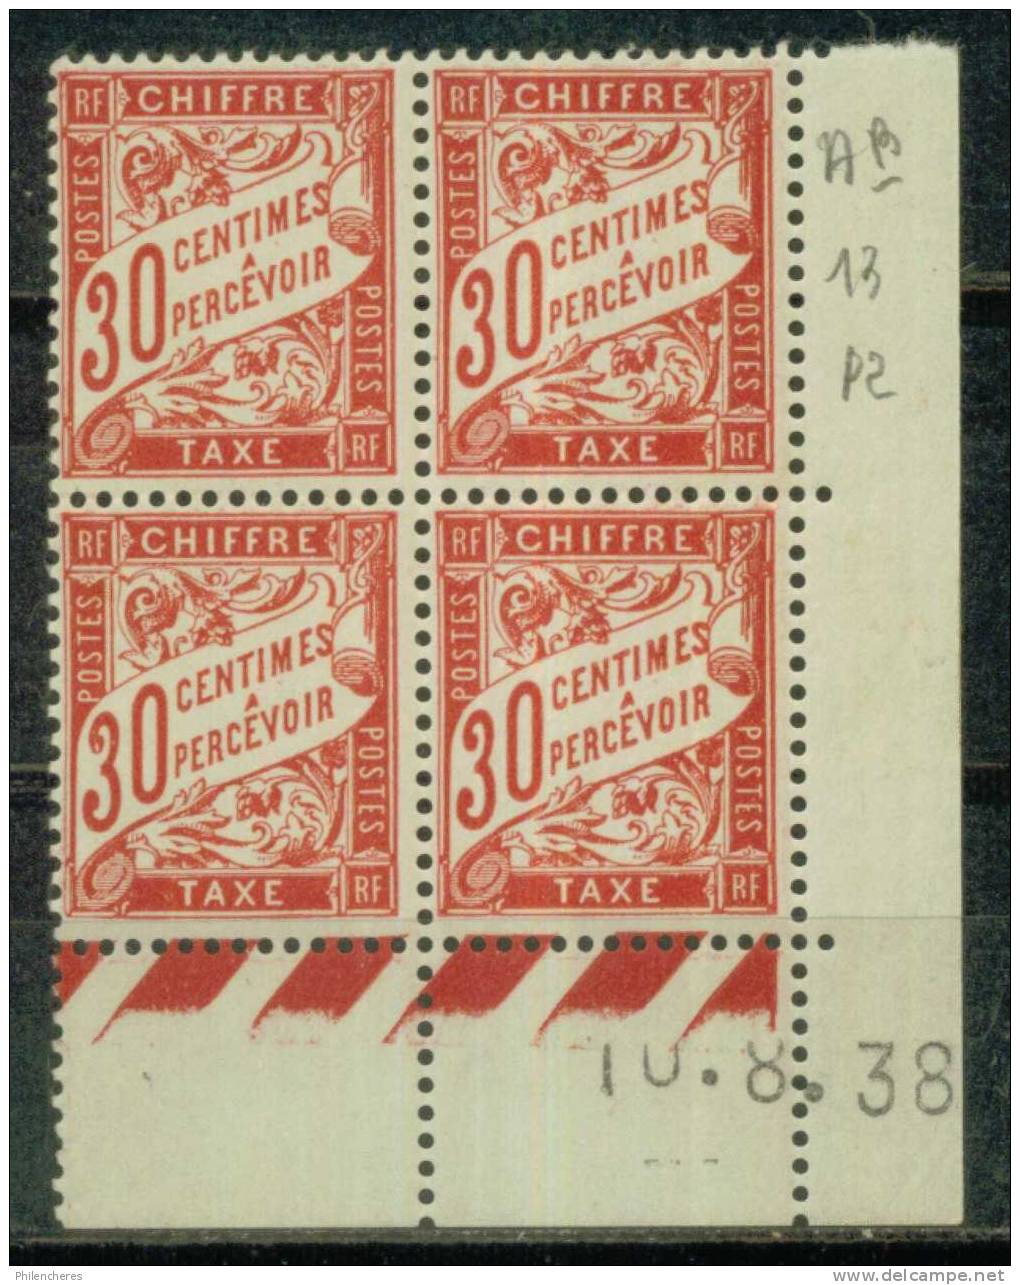 France Bloc De 4 - Coin Daté 1938 - Yvert Taxe N° 33 X - Cote 5 Euros - Prix De Départ 1,5 Euro - Postage Due